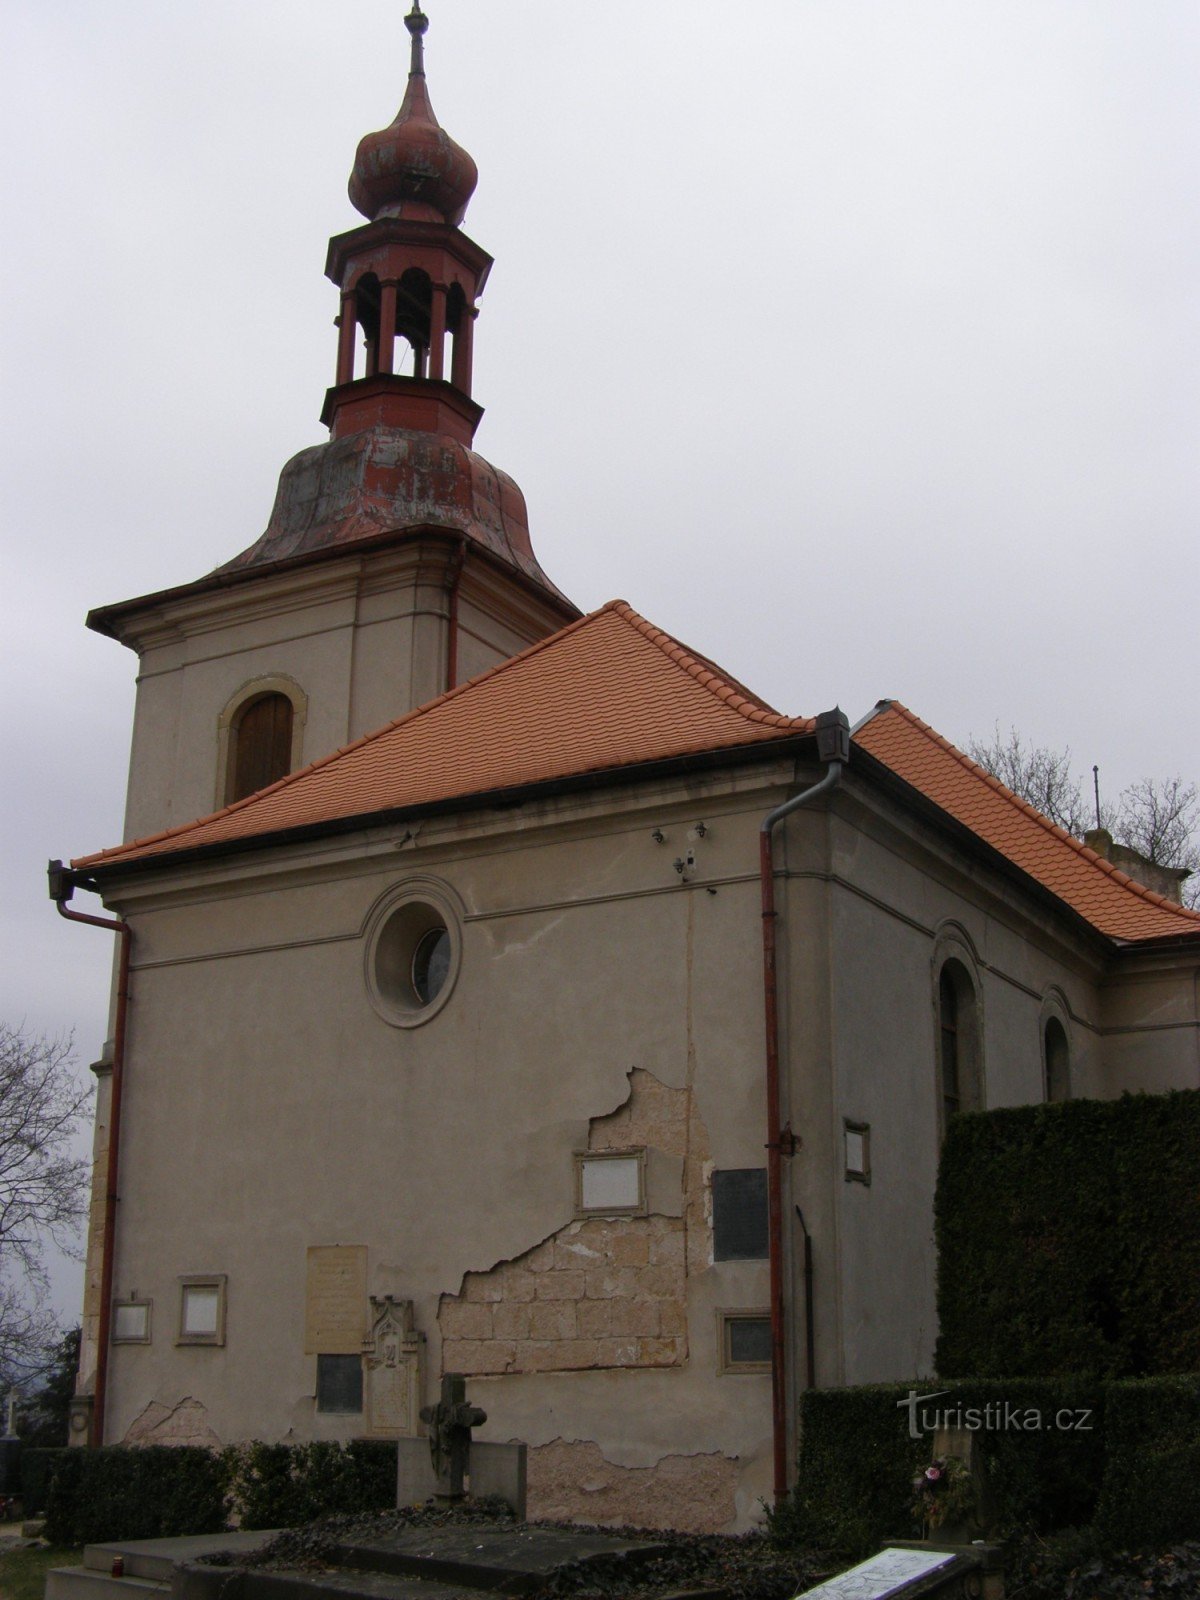 Gothard - Pyhän kirkko Gothard